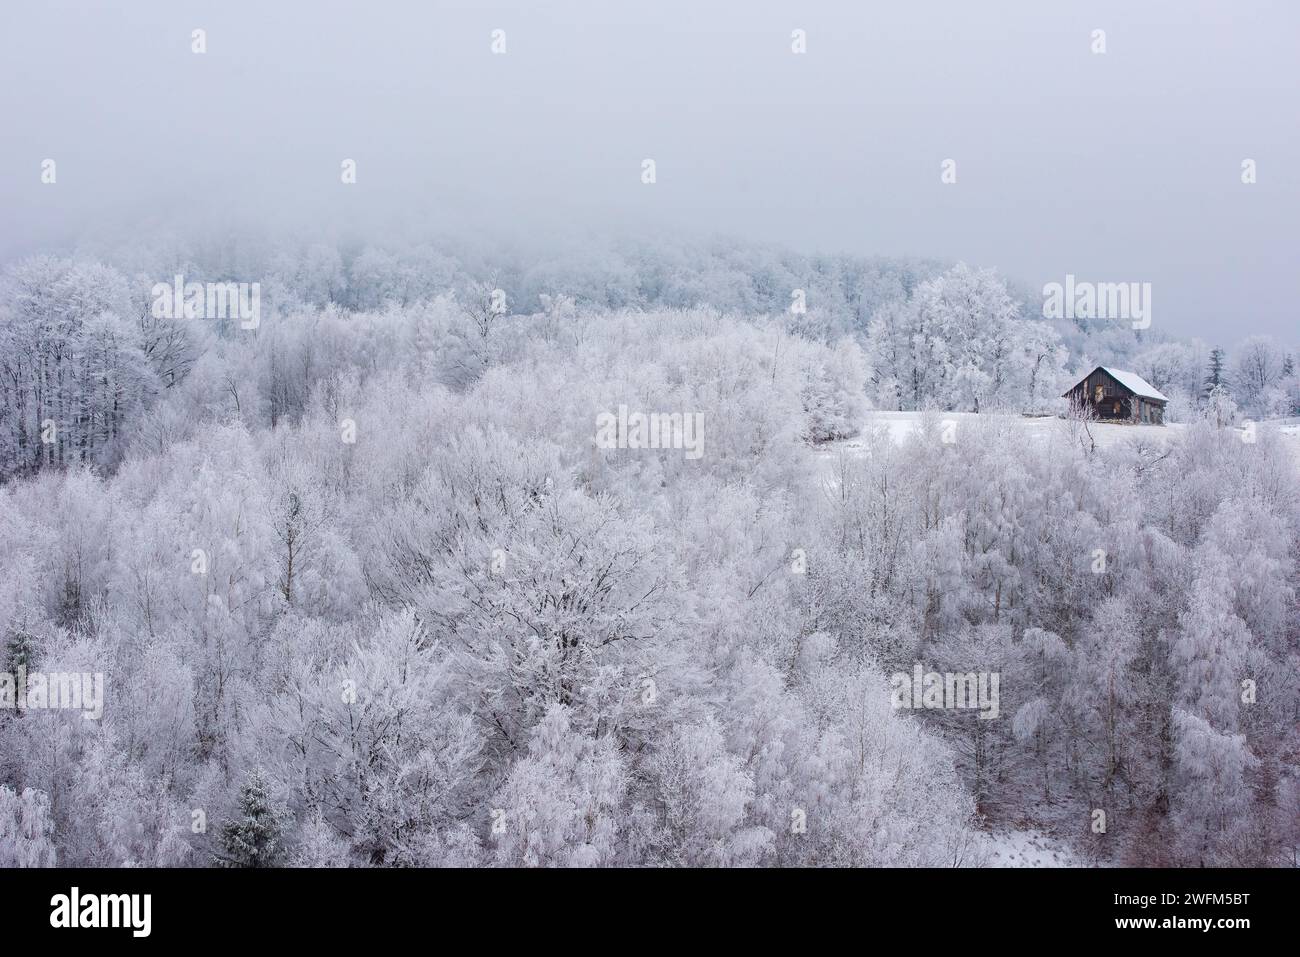 Une cabane en bois isolée entourée d'une forêt gelée. Magnifique paysage de chalet d'hiver Banque D'Images